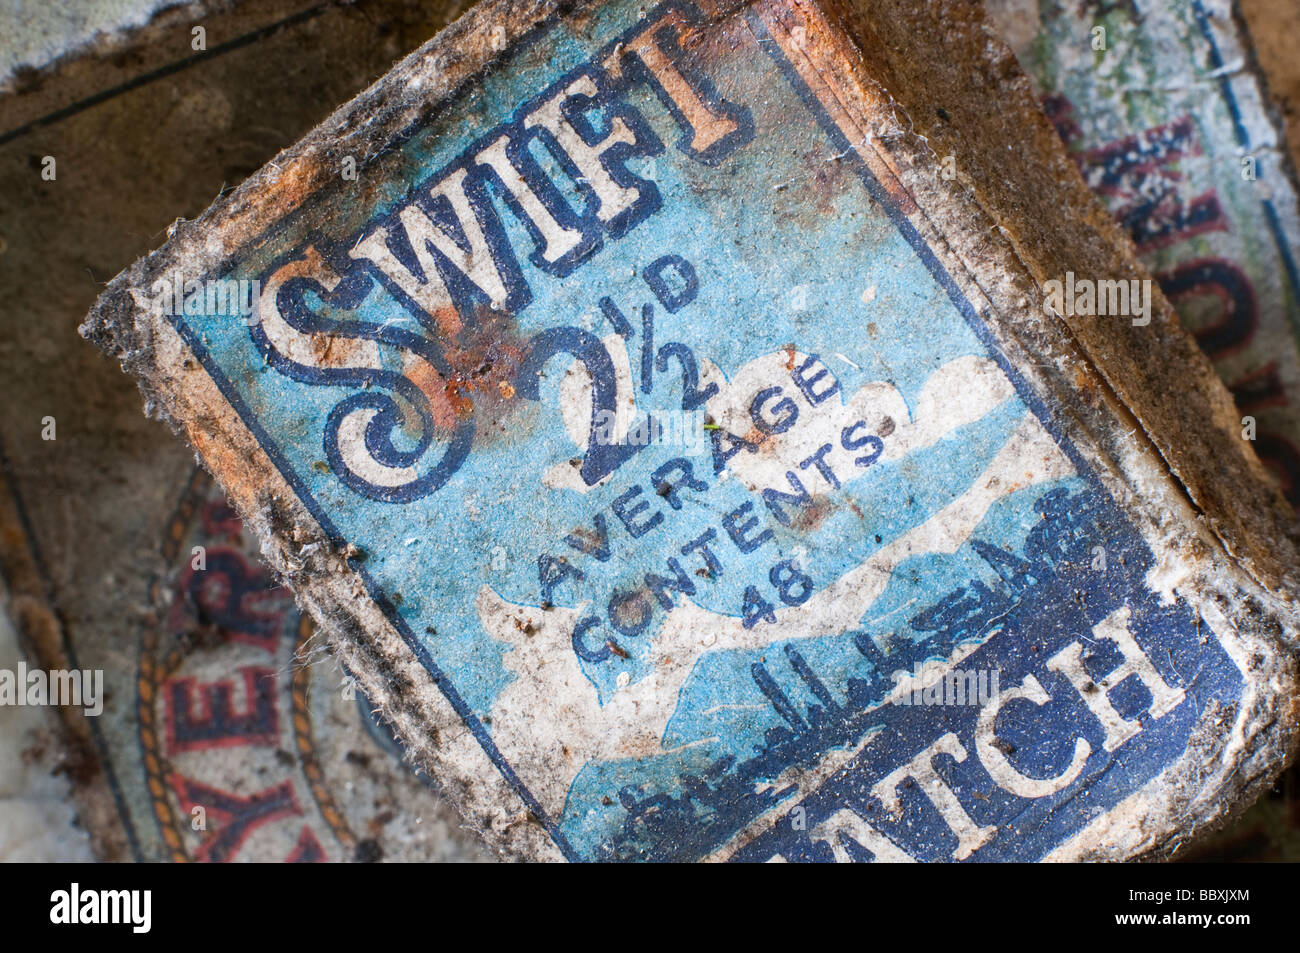 Paquete antiguo de Swift, fósforos, dejado atrás durante los decenios de 1950 y 1960 Foto de stock